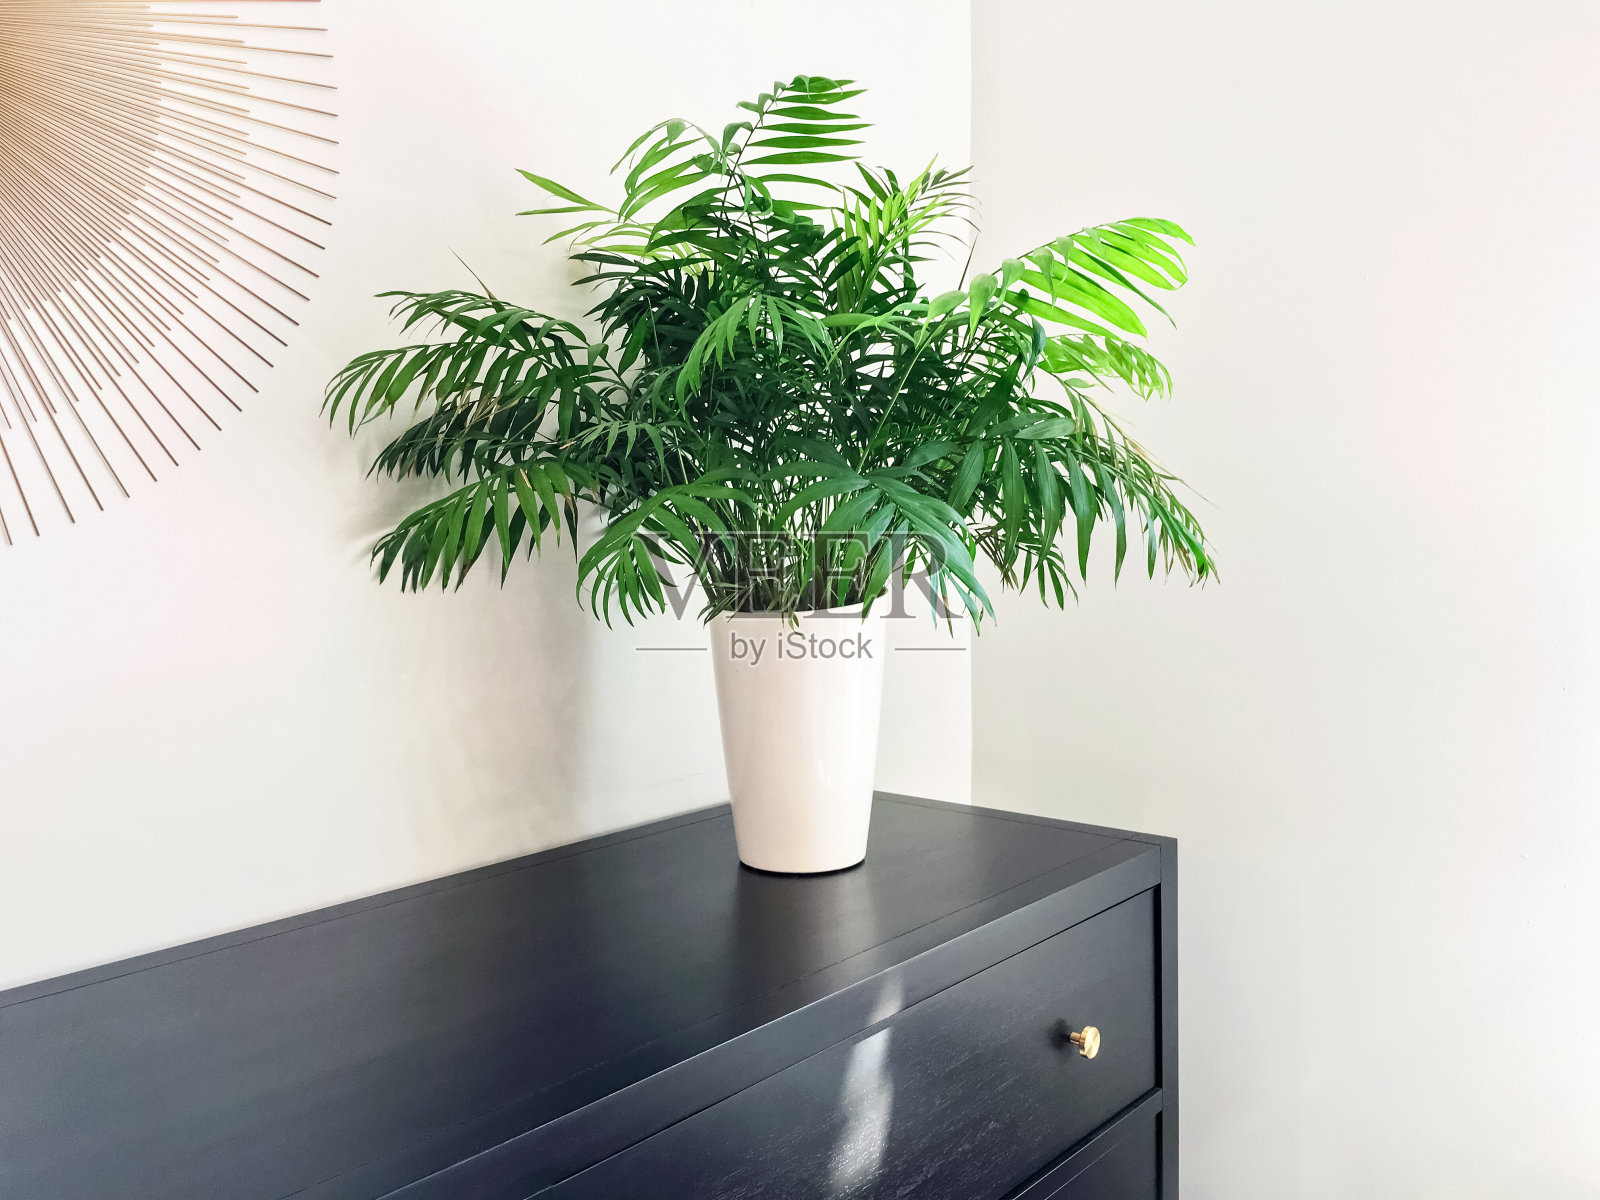 客厅棕榈植物装饰黑色木制梳妆台照片摄影图片